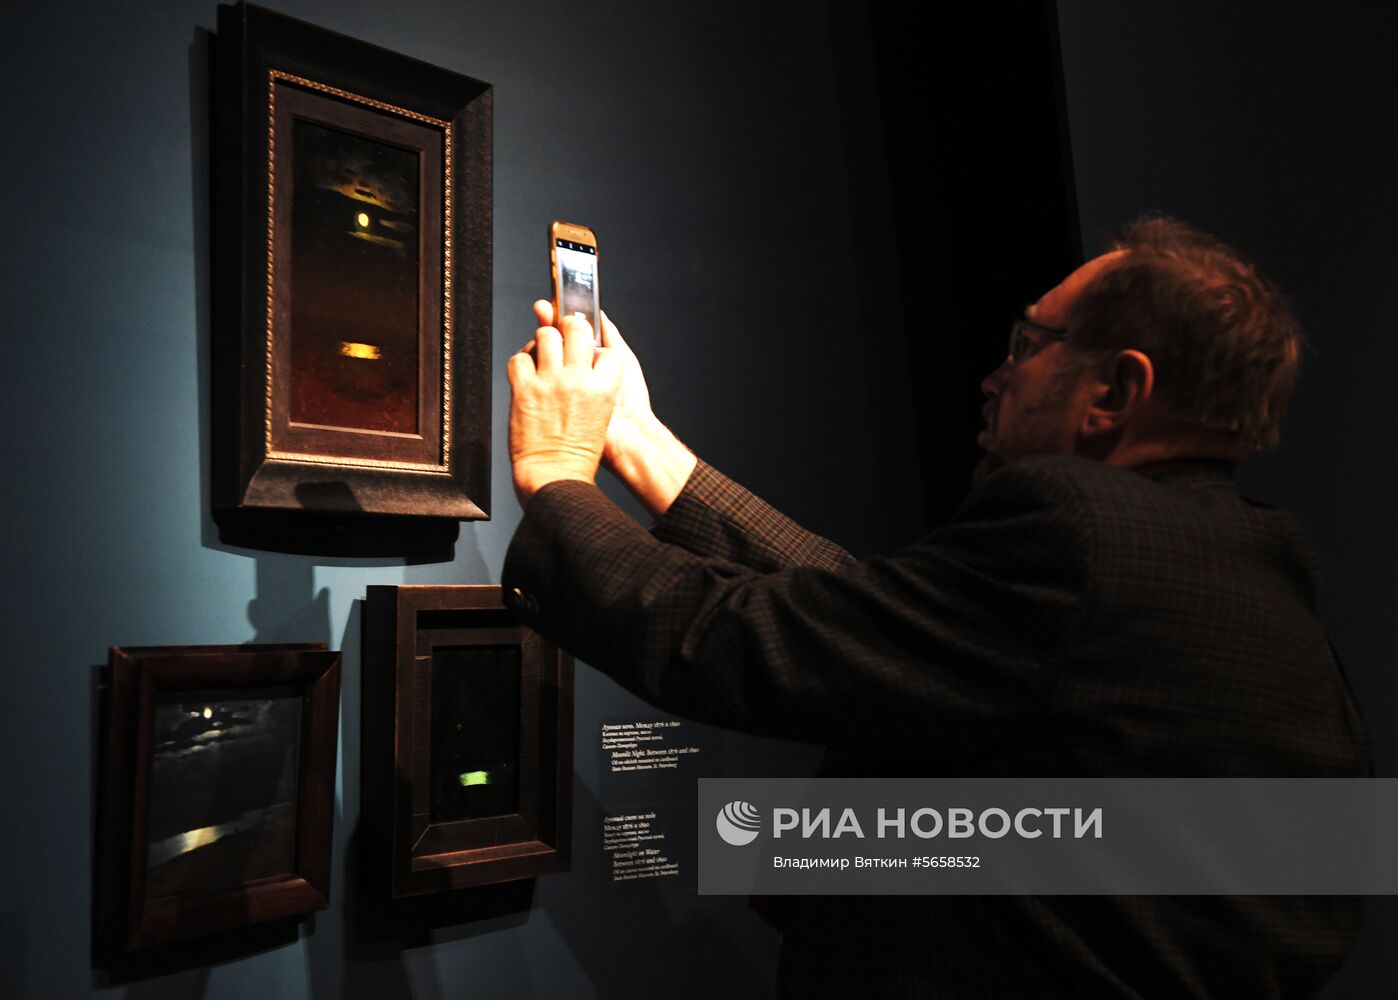 Выставка "Архип Куинджи" в Третьяковской галерее